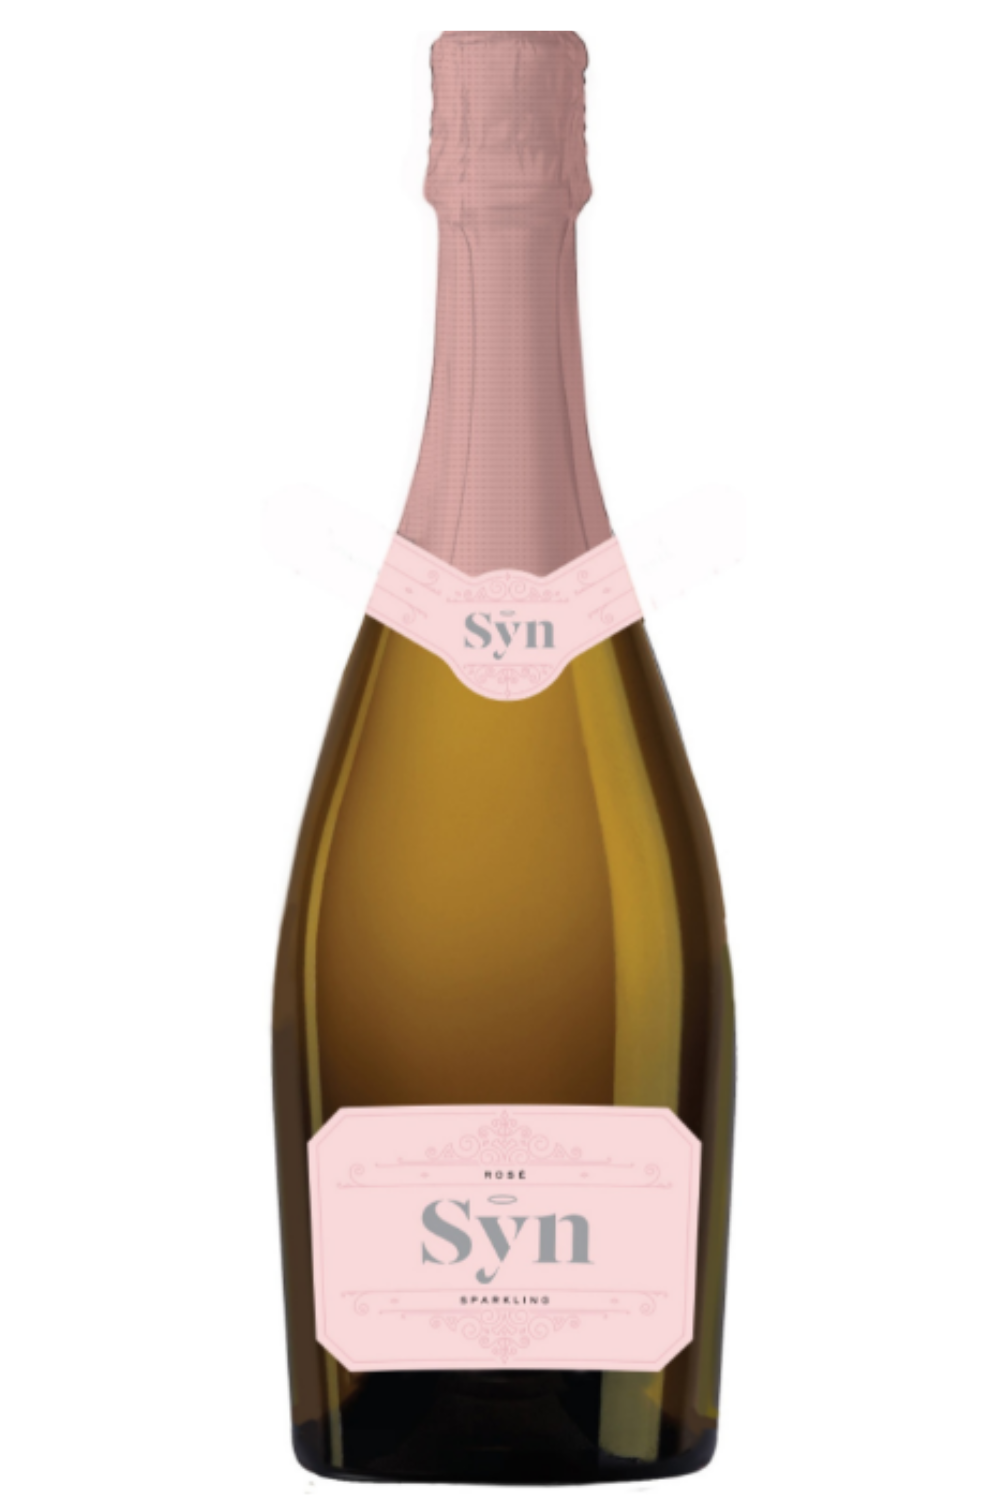 SYN Sparkling Rosé NV (6 per case)